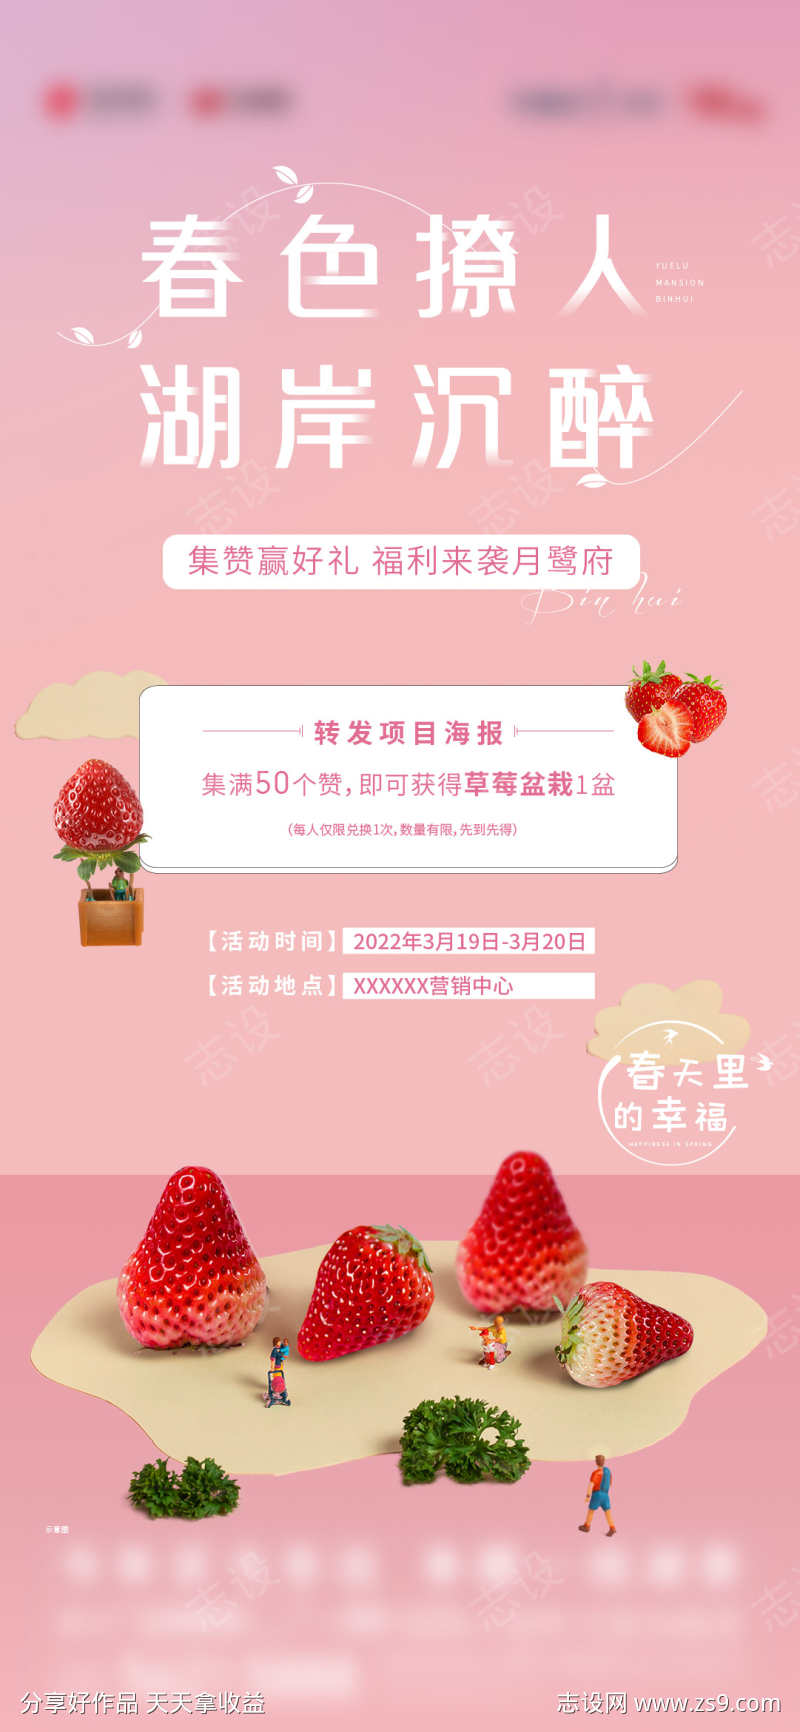 地产草莓集赞福利活动海报